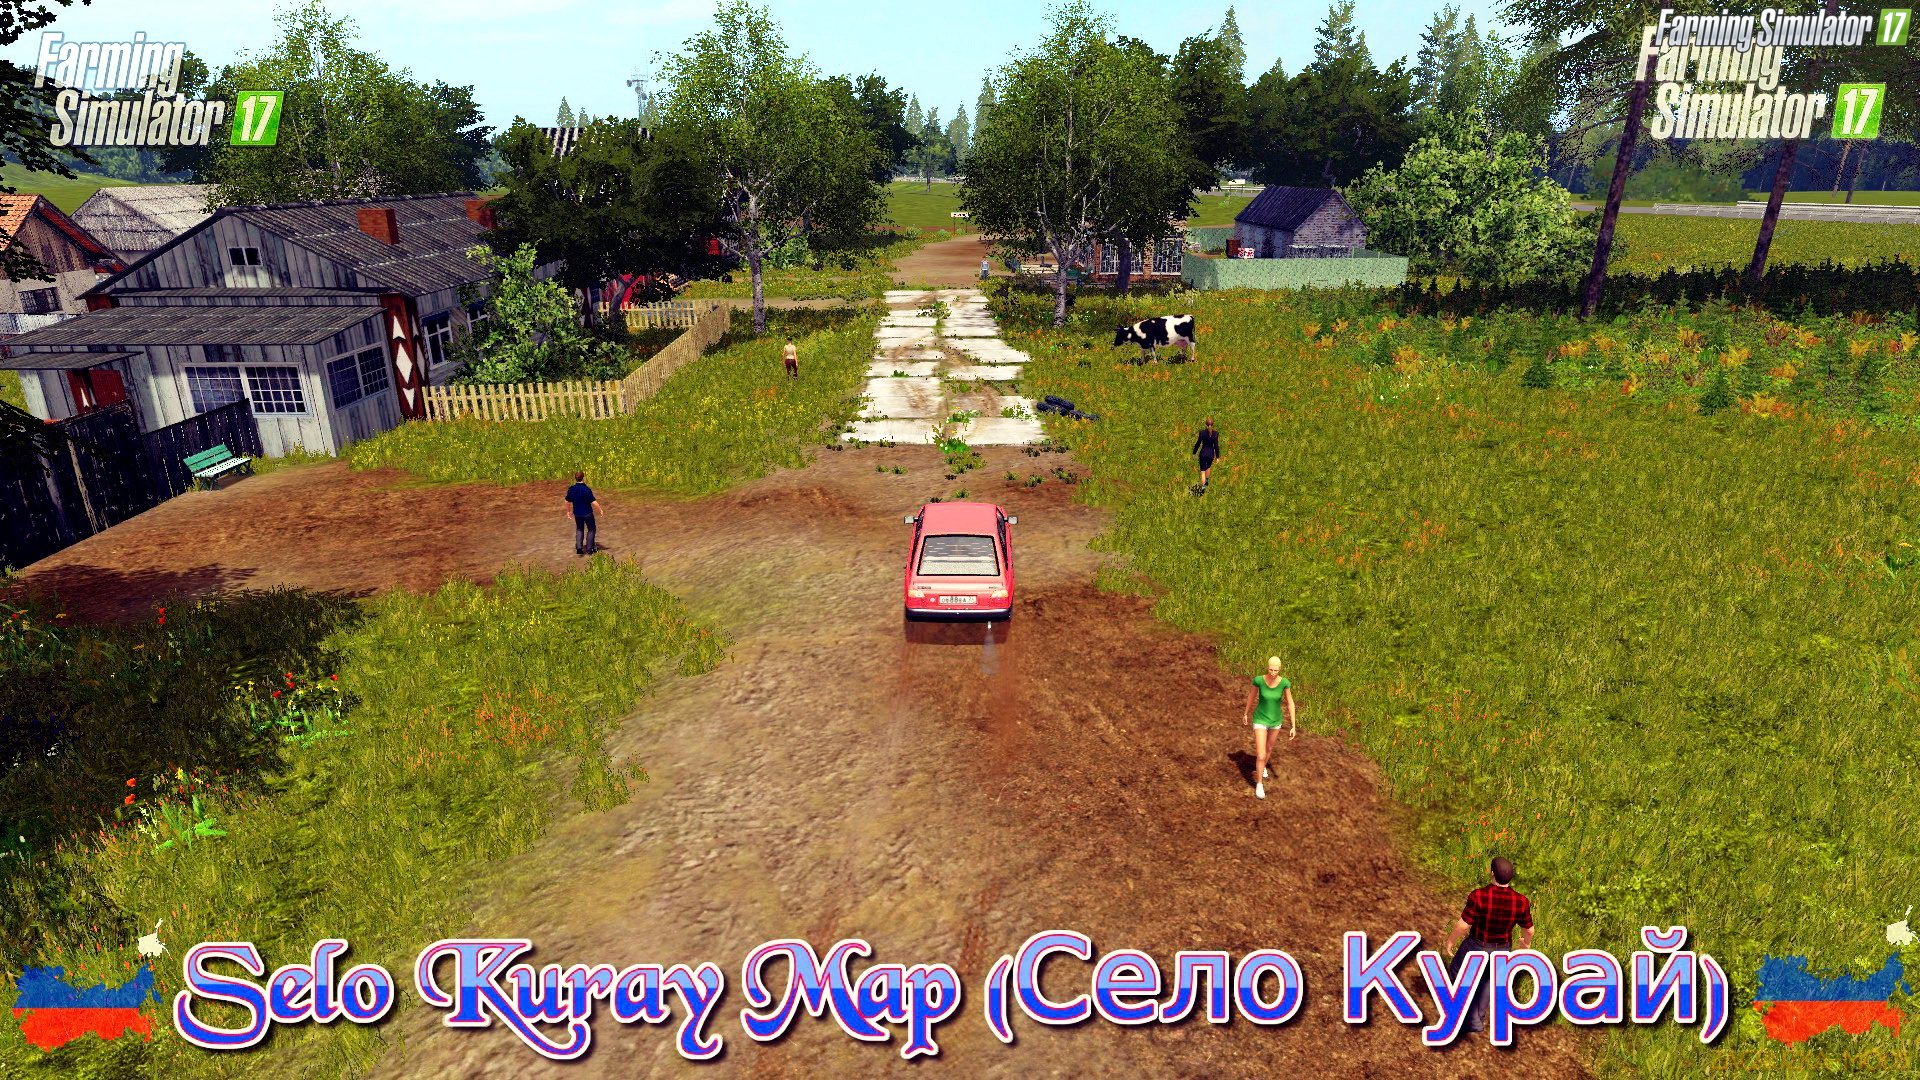 Selo Kuray Map v1.4.4 for FS 17